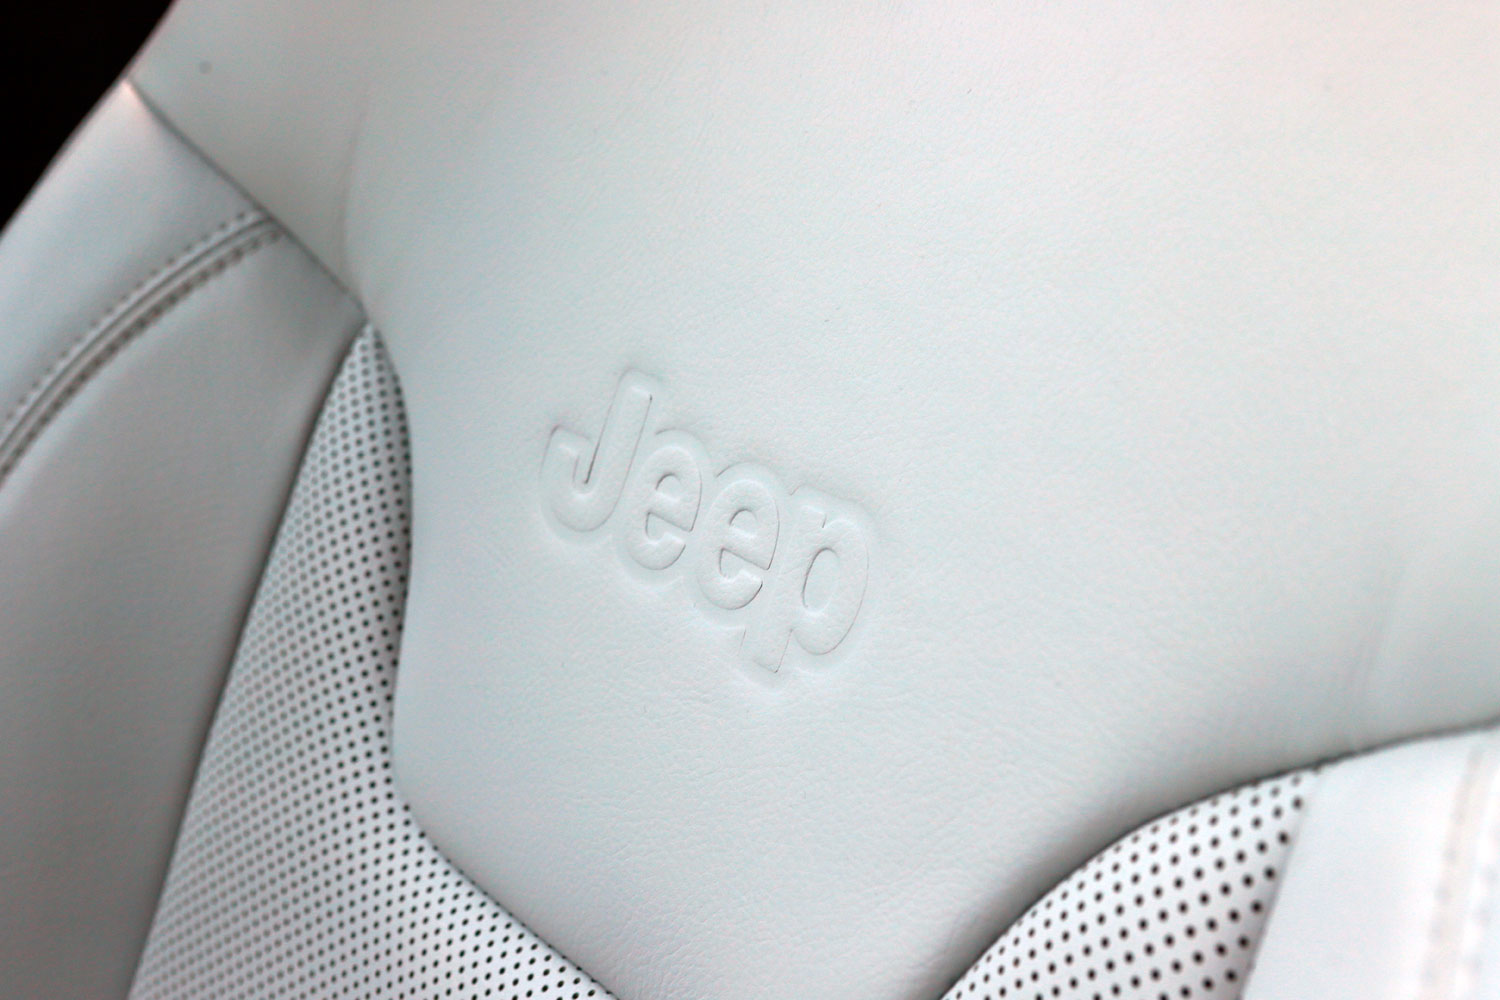 Kívül-belül csodás, de nagyon hisztis – Jeep Compass teszt 39